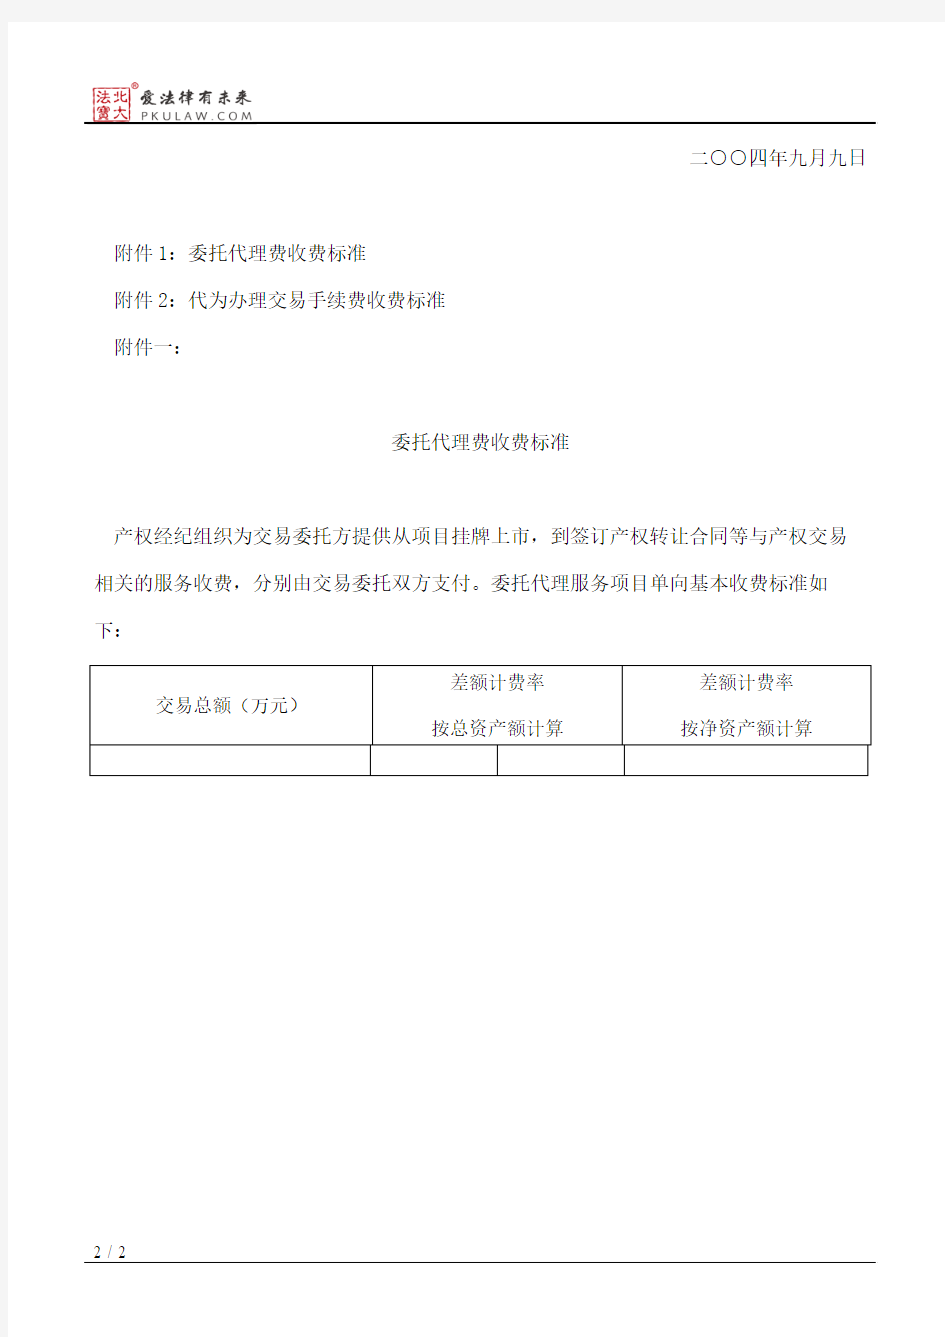 上海联合产权交易所关于产权交易收费的通知